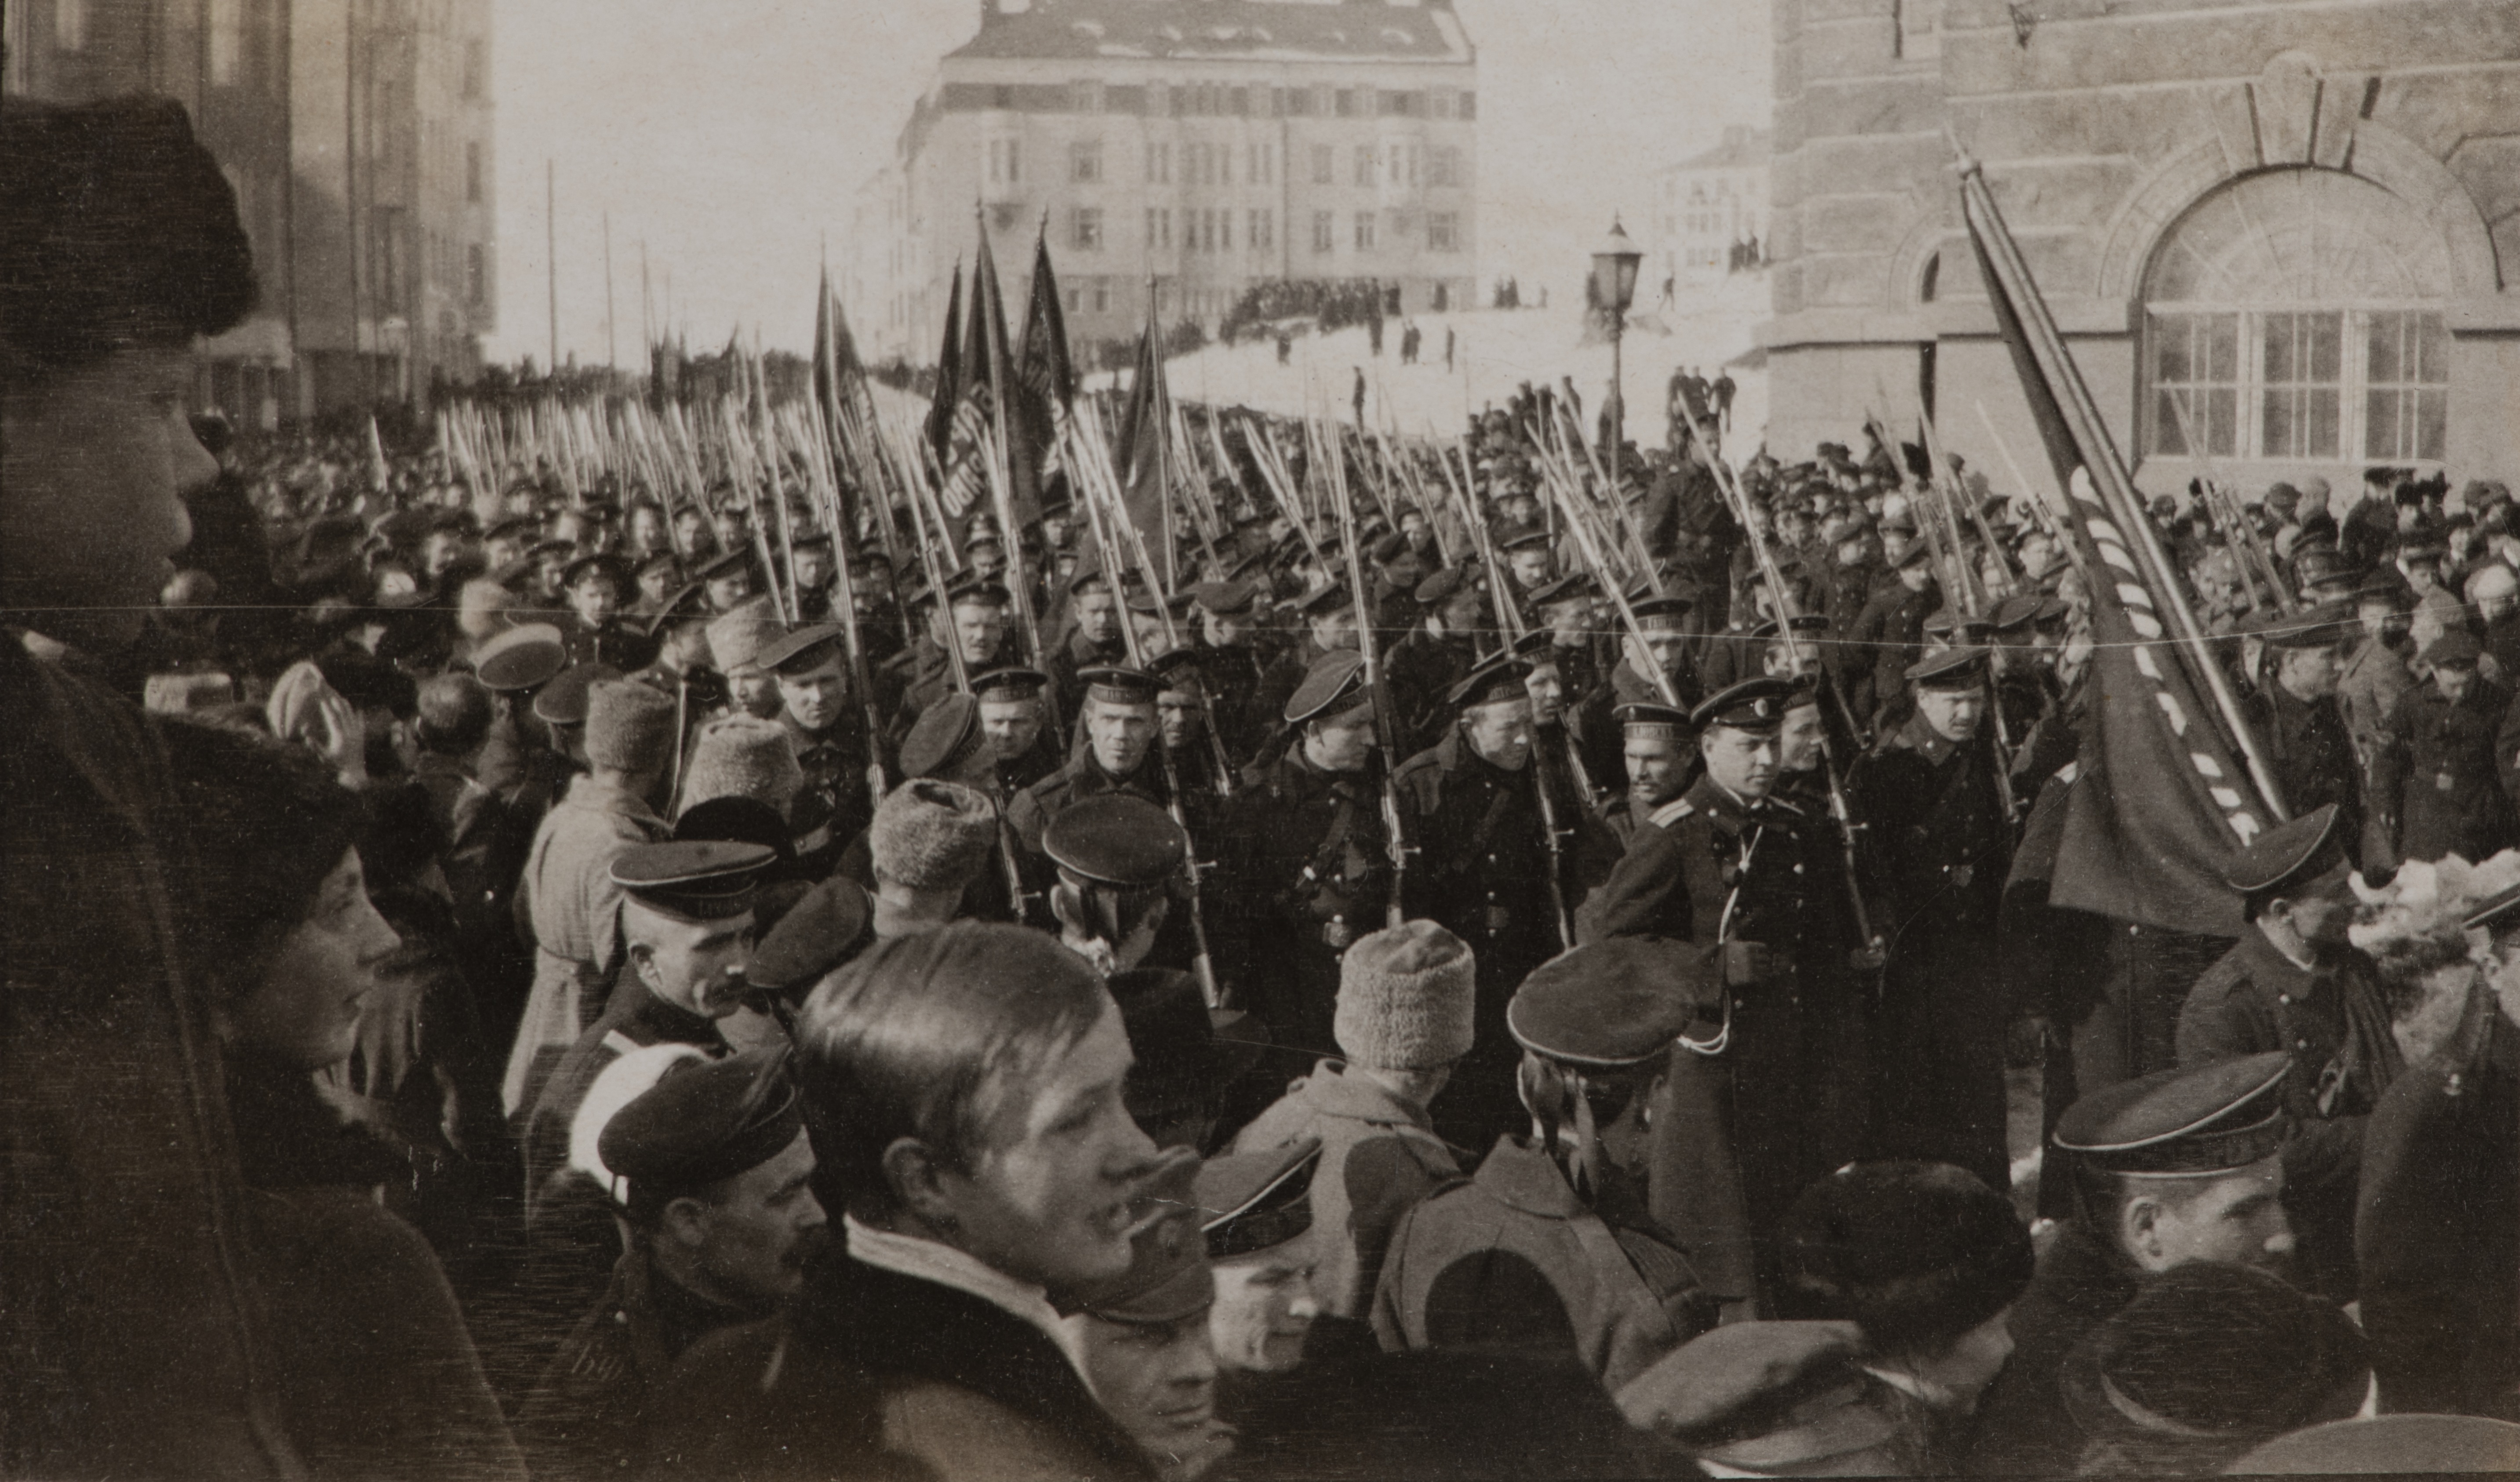 Venäläisten vuoden 1917 vallankumousjuhlat. Vasemmalla Arkadiankatu 8, oikealla Pohjoinen Rautatiekatu 13. Takana oikealla Arkadiankatu 15 - Aurorankatu 19.